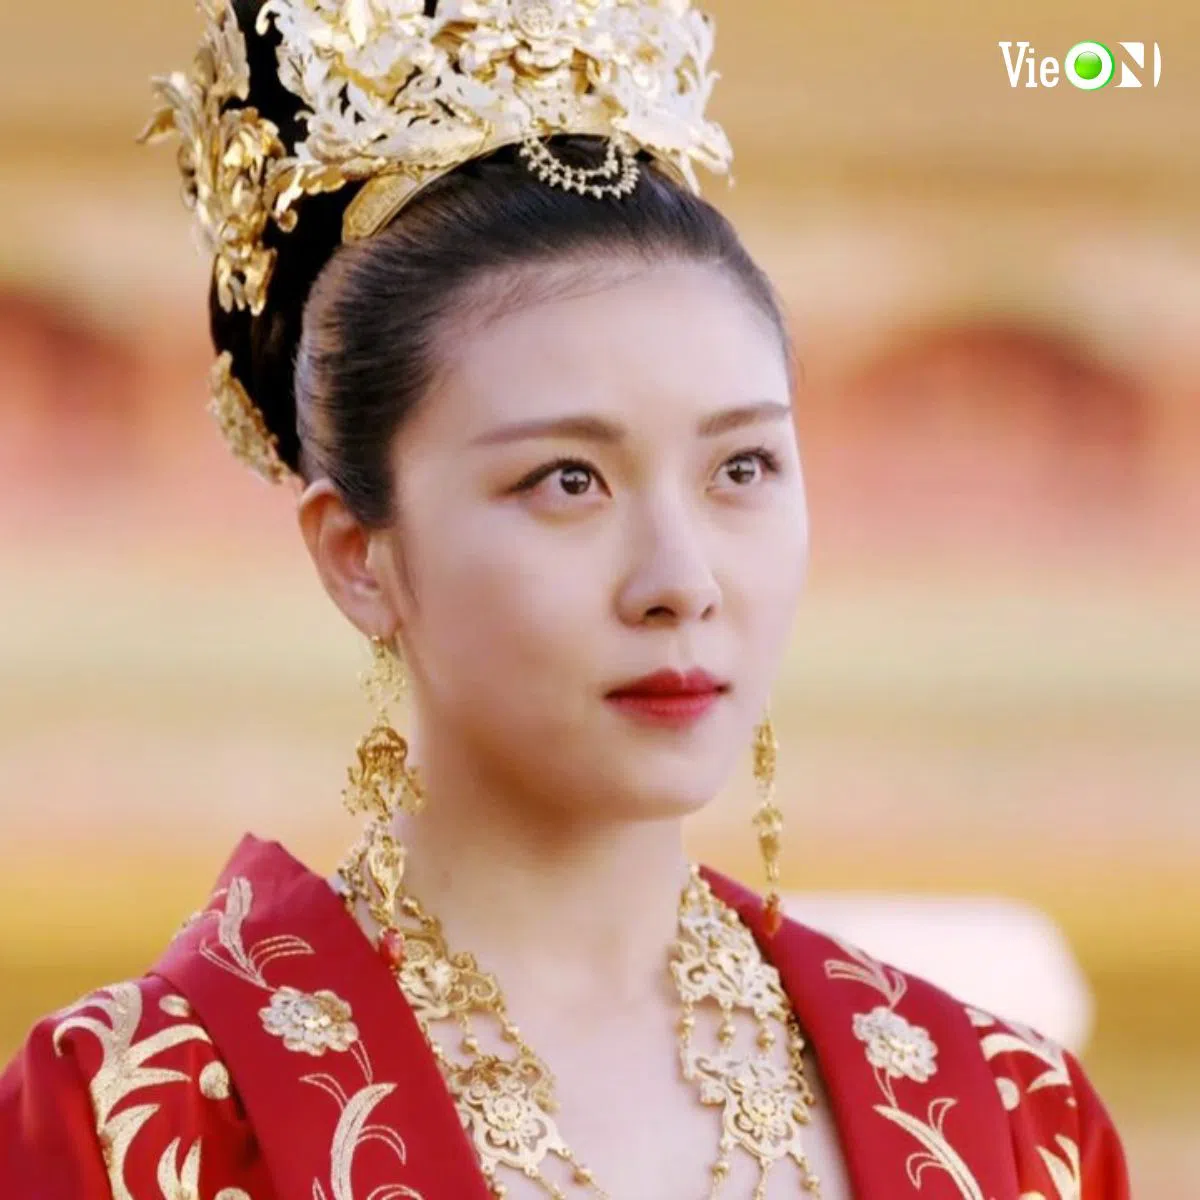 3 phim cung đấu hay trên màn ảnh Hàn: Hoàng hậu Ki khuấy đảo, Nội chiến hoàng gia gây sốt 